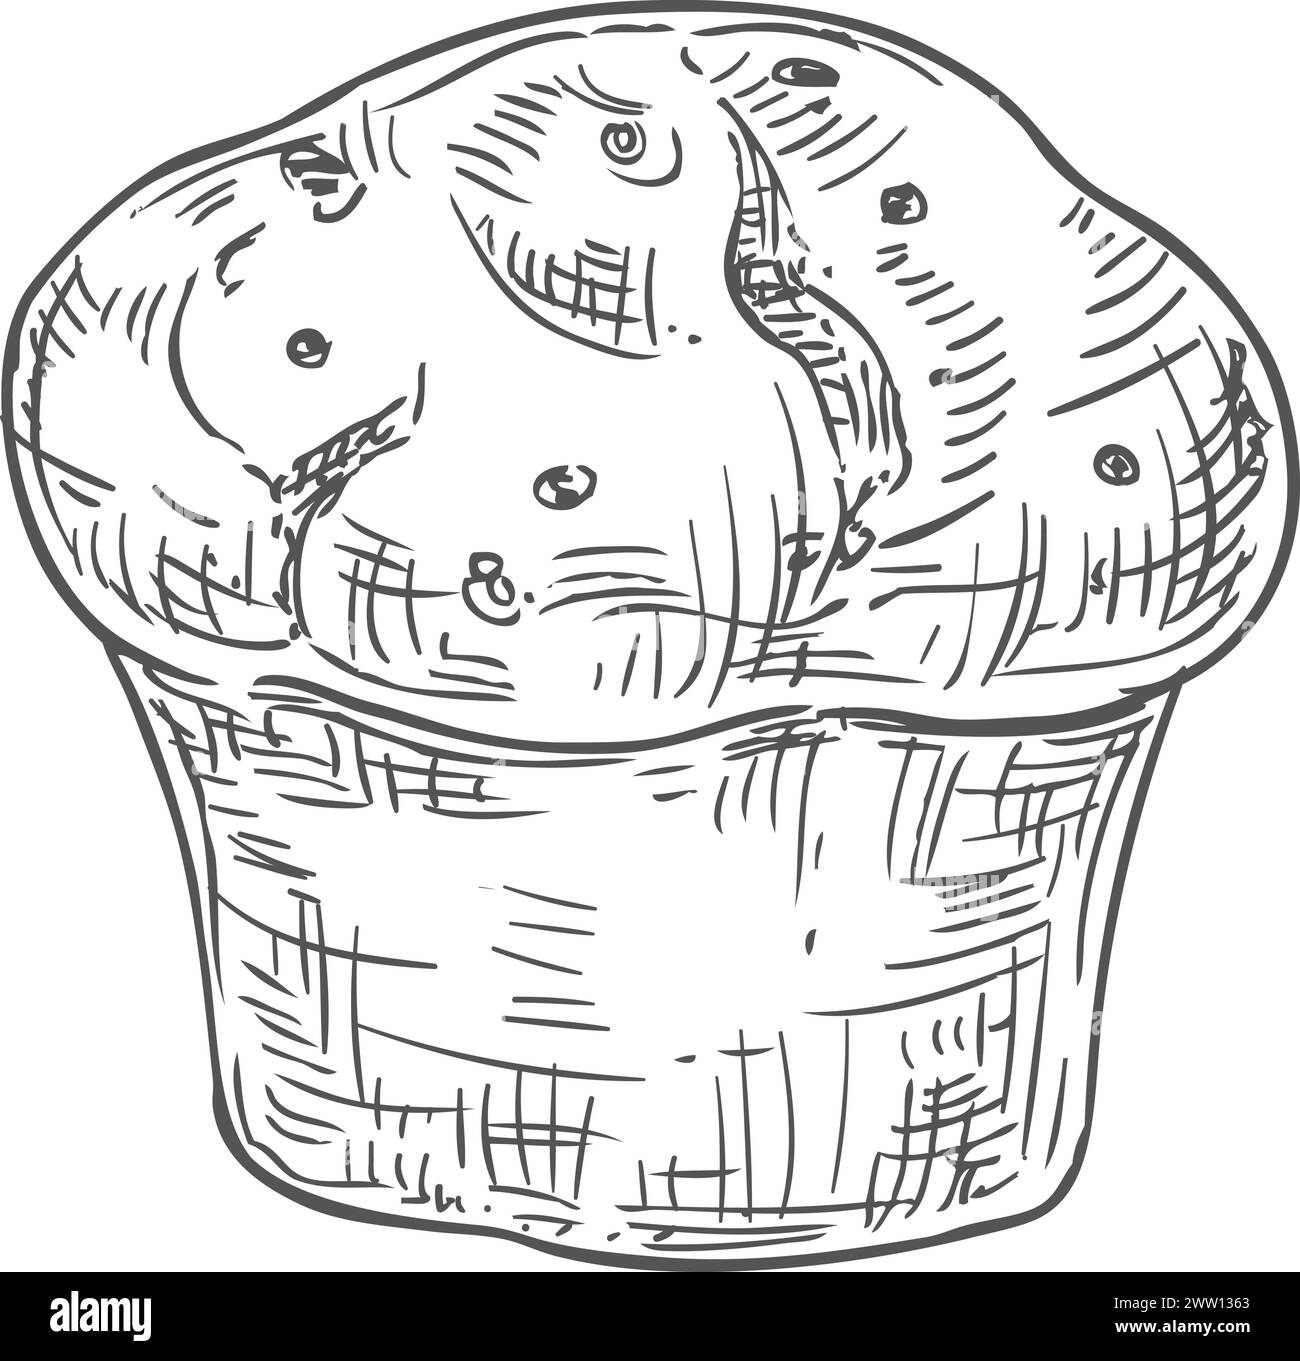 Schizzo del muffin. Disegno del menu di pasticceria. Dolce panificio Illustrazione Vettoriale